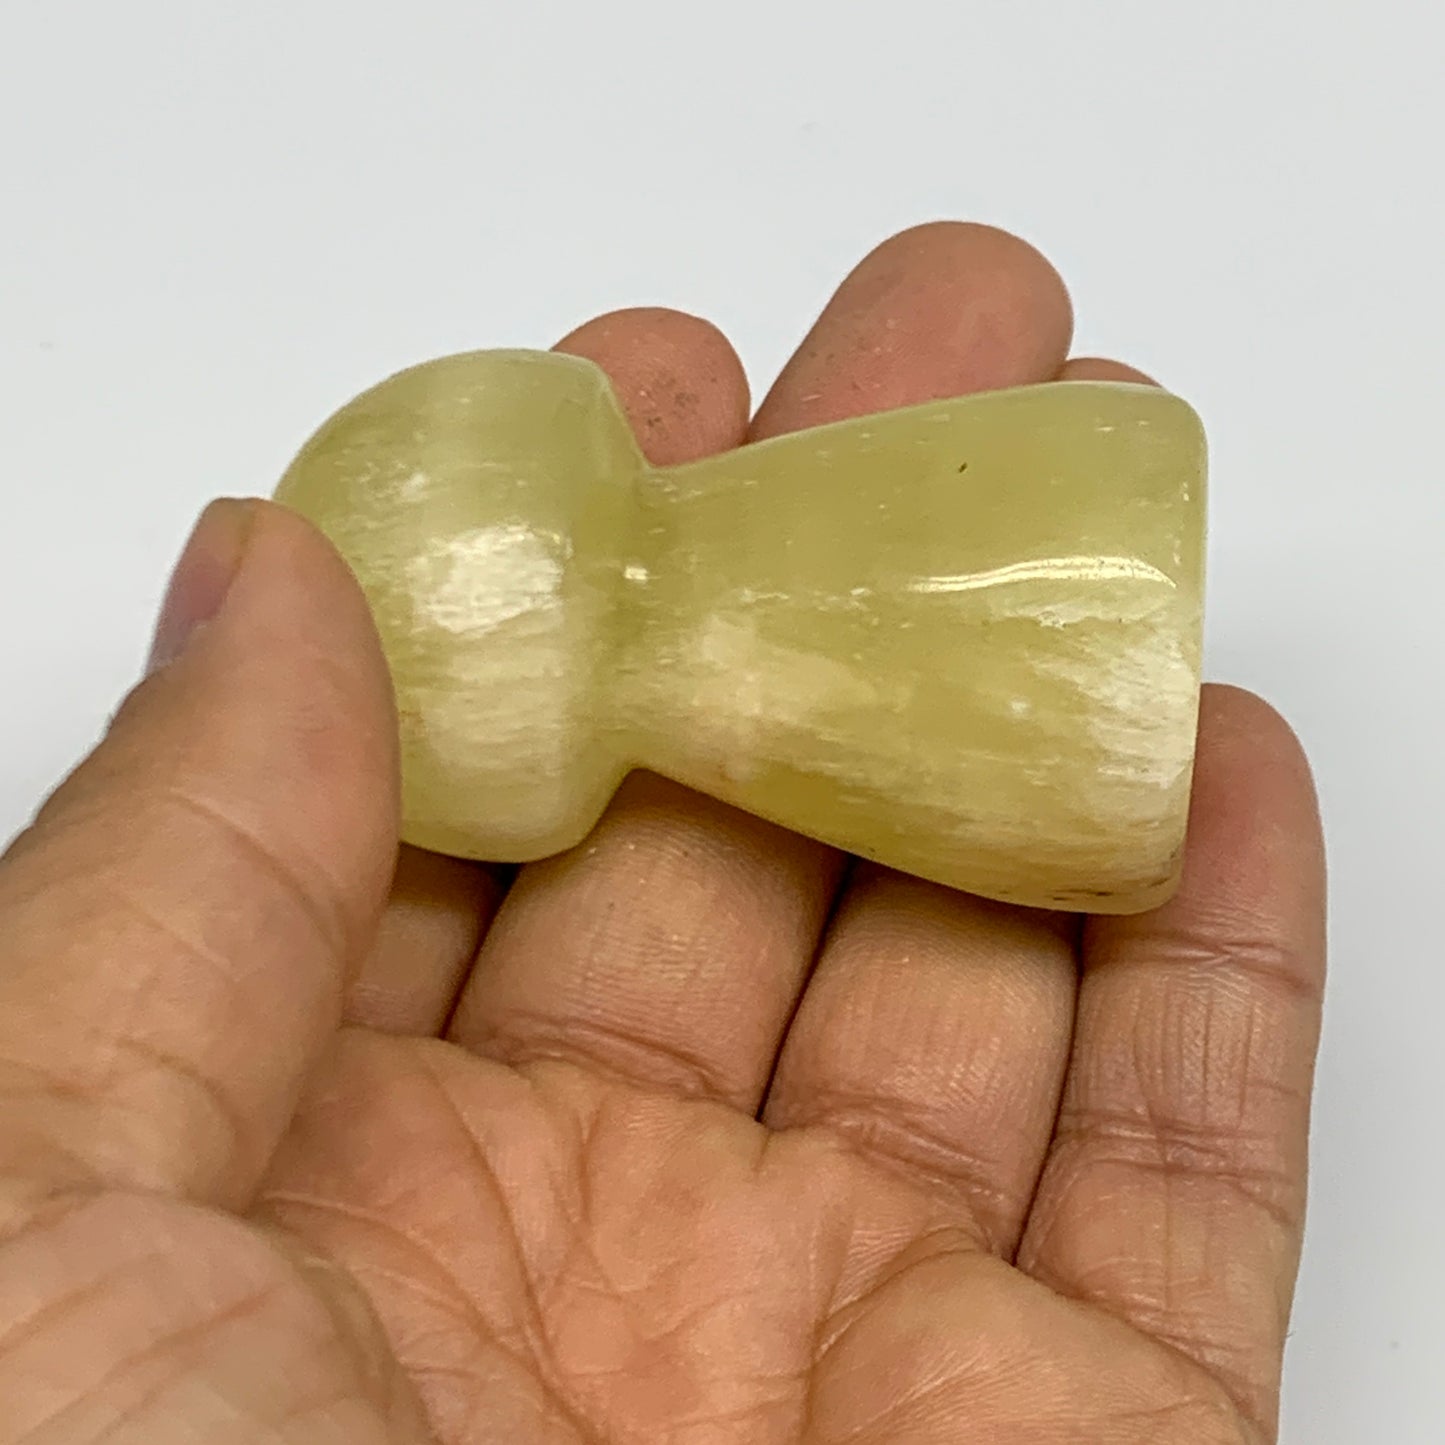 84.8g, 2.1"x1.2" Natural Lemon Calcite Mushroom Gemstone @Pakistan, B31688